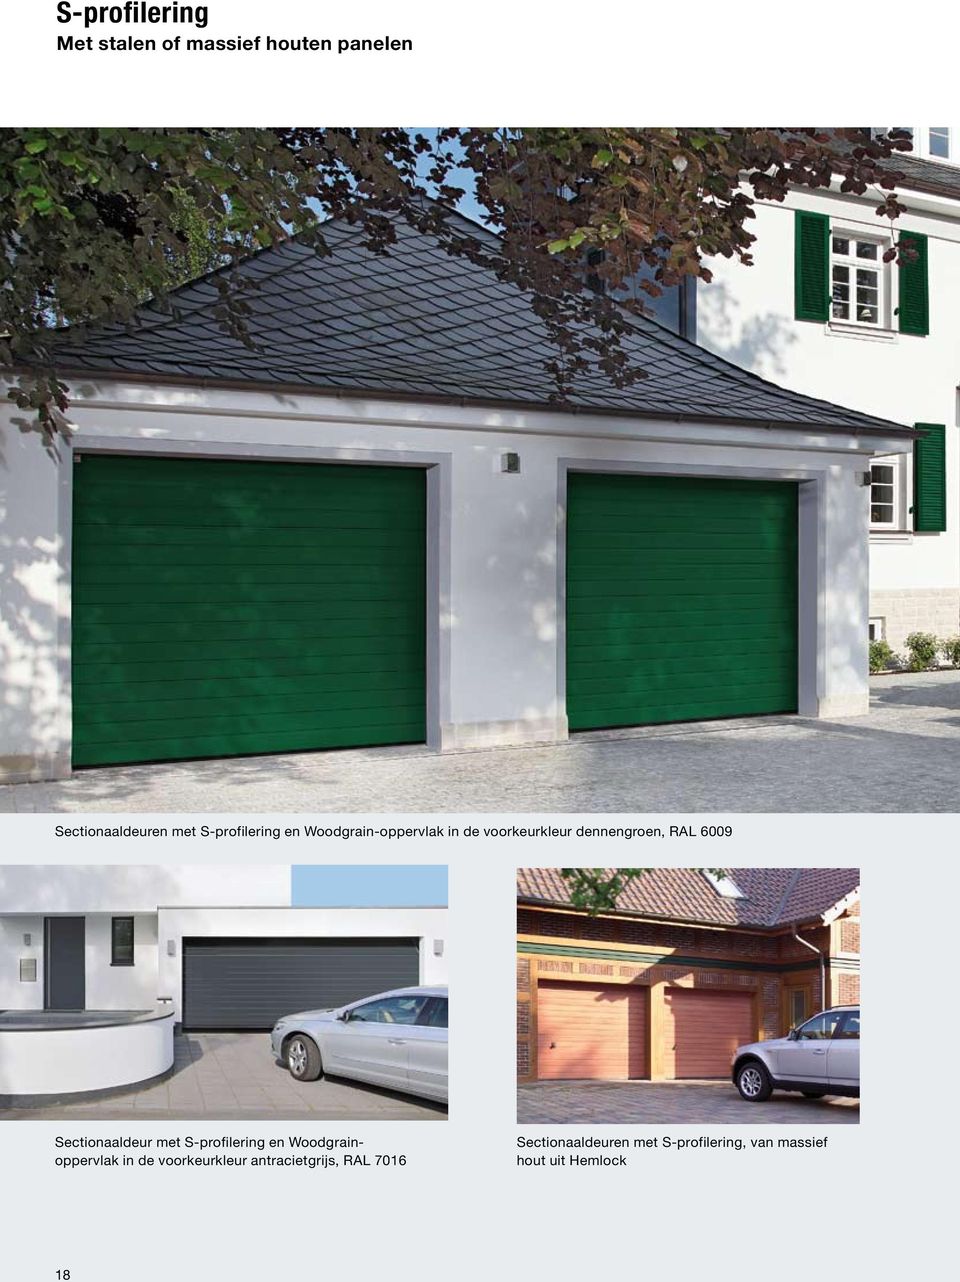 Sectionaaldeur met S-profilering en Woodgrainoppervlak in de voorkeurkleur